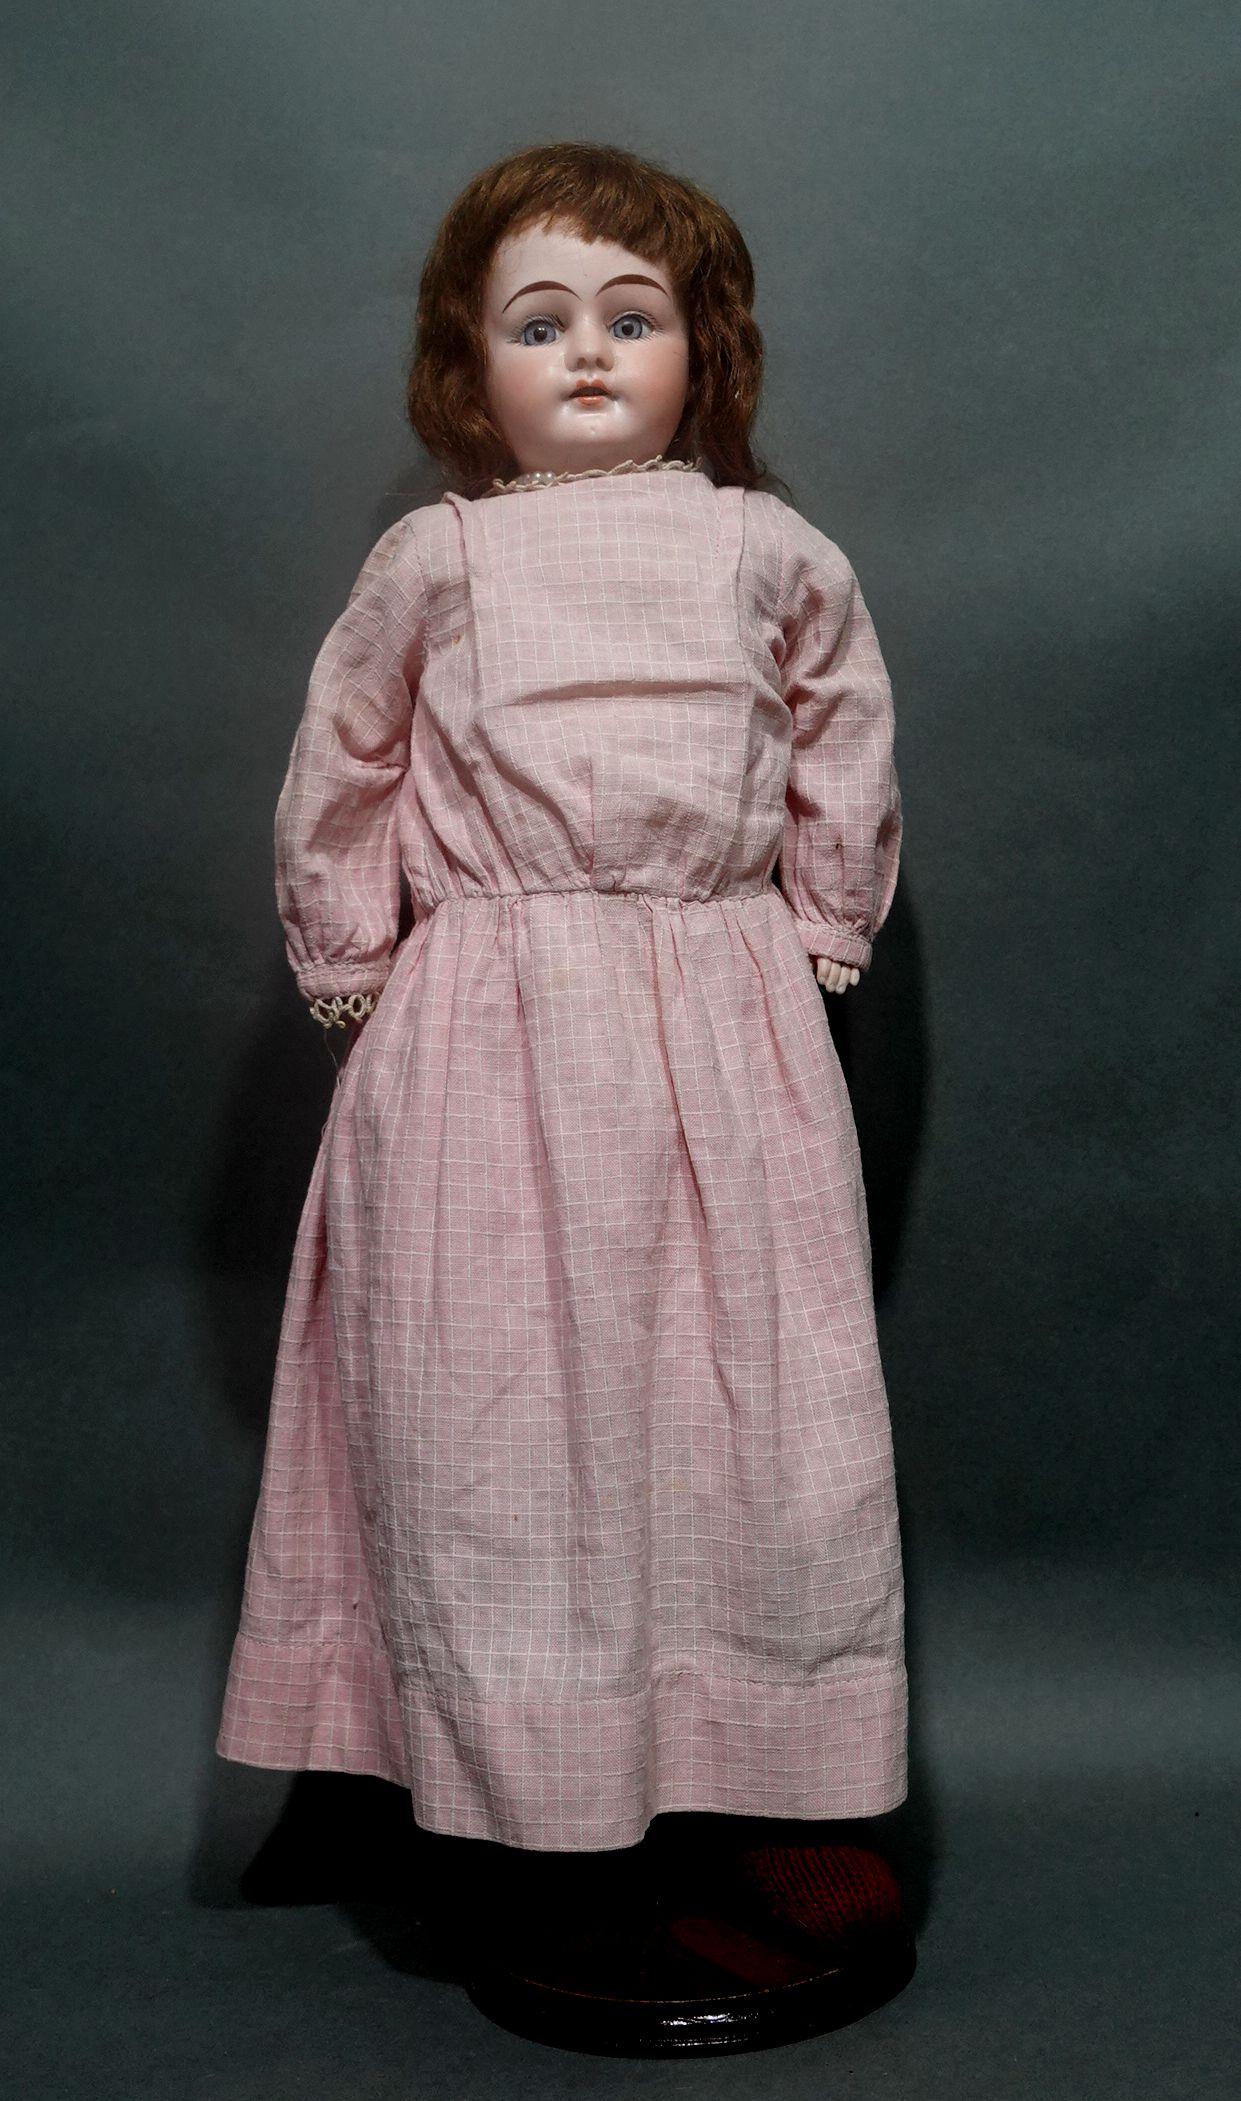 Original Armand Marseille Puppe, mit Kopf und Händen aus Biskuit. Ihre Füße tragen rote Socken. Sie hat wunderschöne blaue, glasige Augen und ihre geschürzten Lippen zeigen ihre perfekten kleinen Zähne. Toller Gesamtzustand. Sie trägt ein